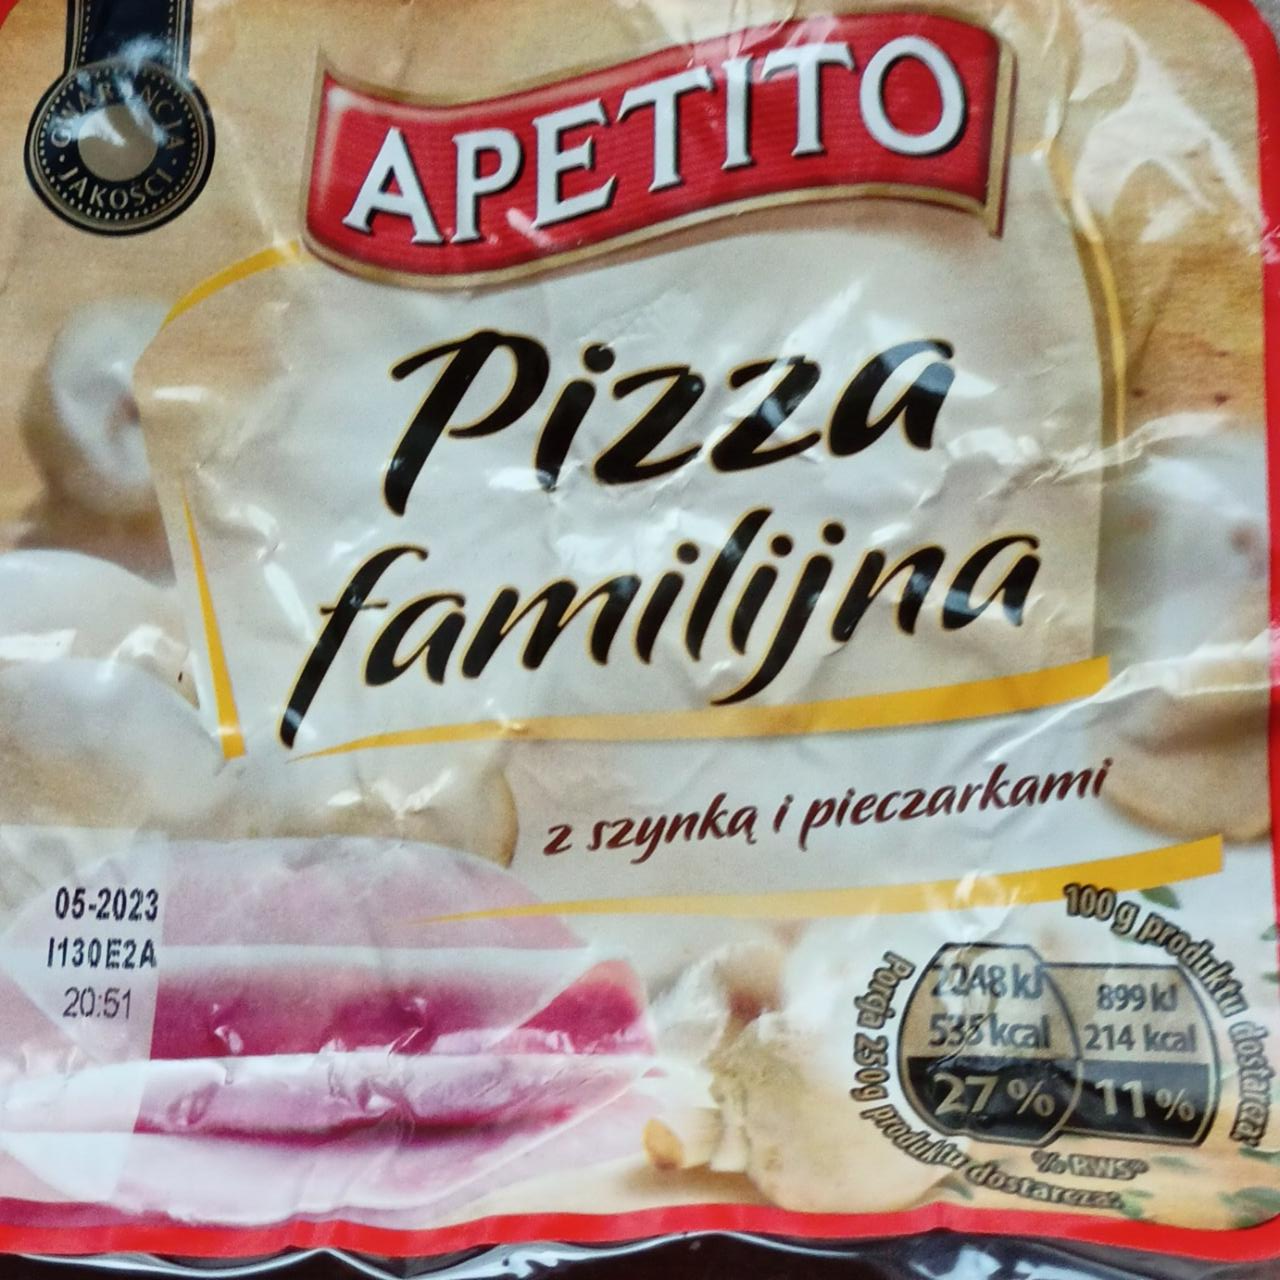 Fotografie - Pizza familijna z szynką i pieczarkami Apetito